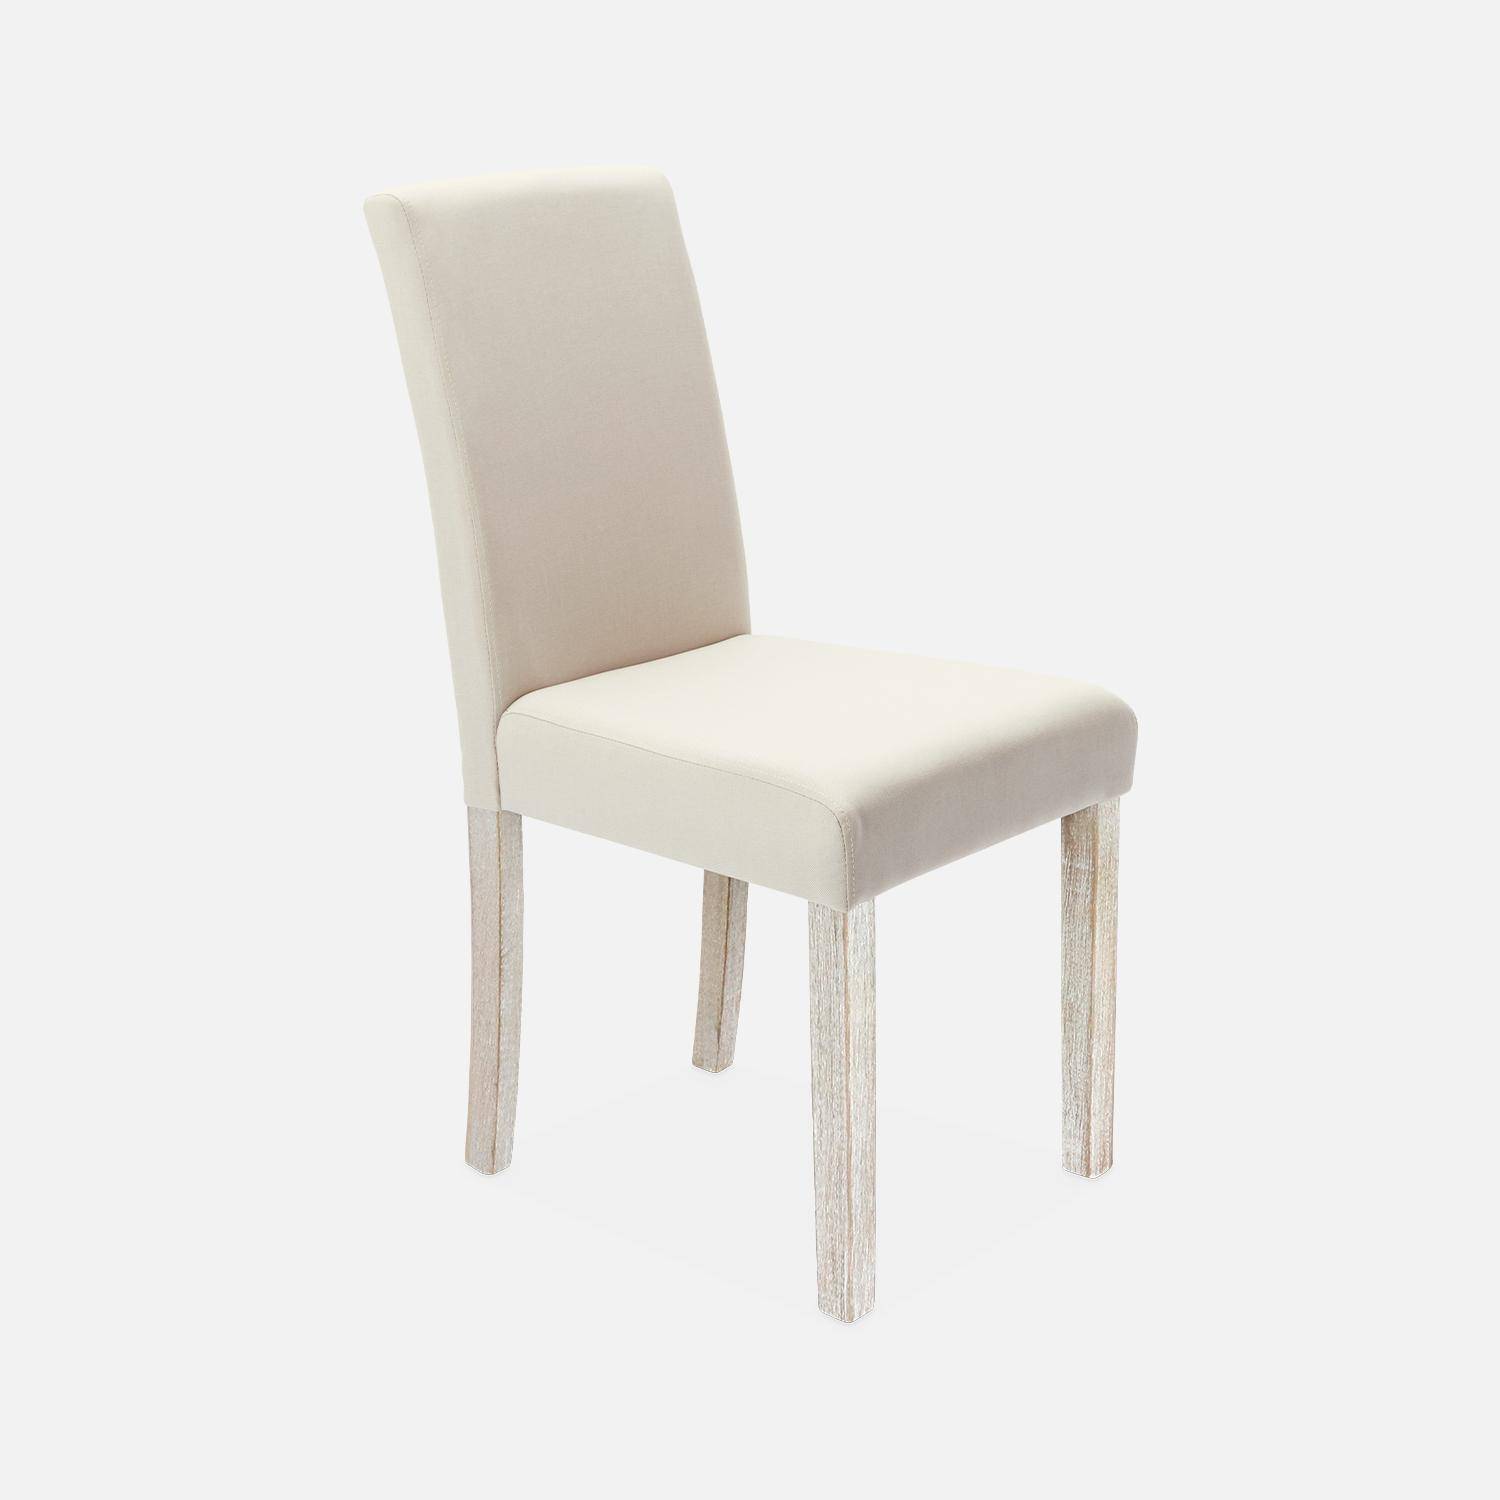 4er Set Stühle mit Stoffbezug Beige, Holzbeine mit Ceruse Finish Photo3